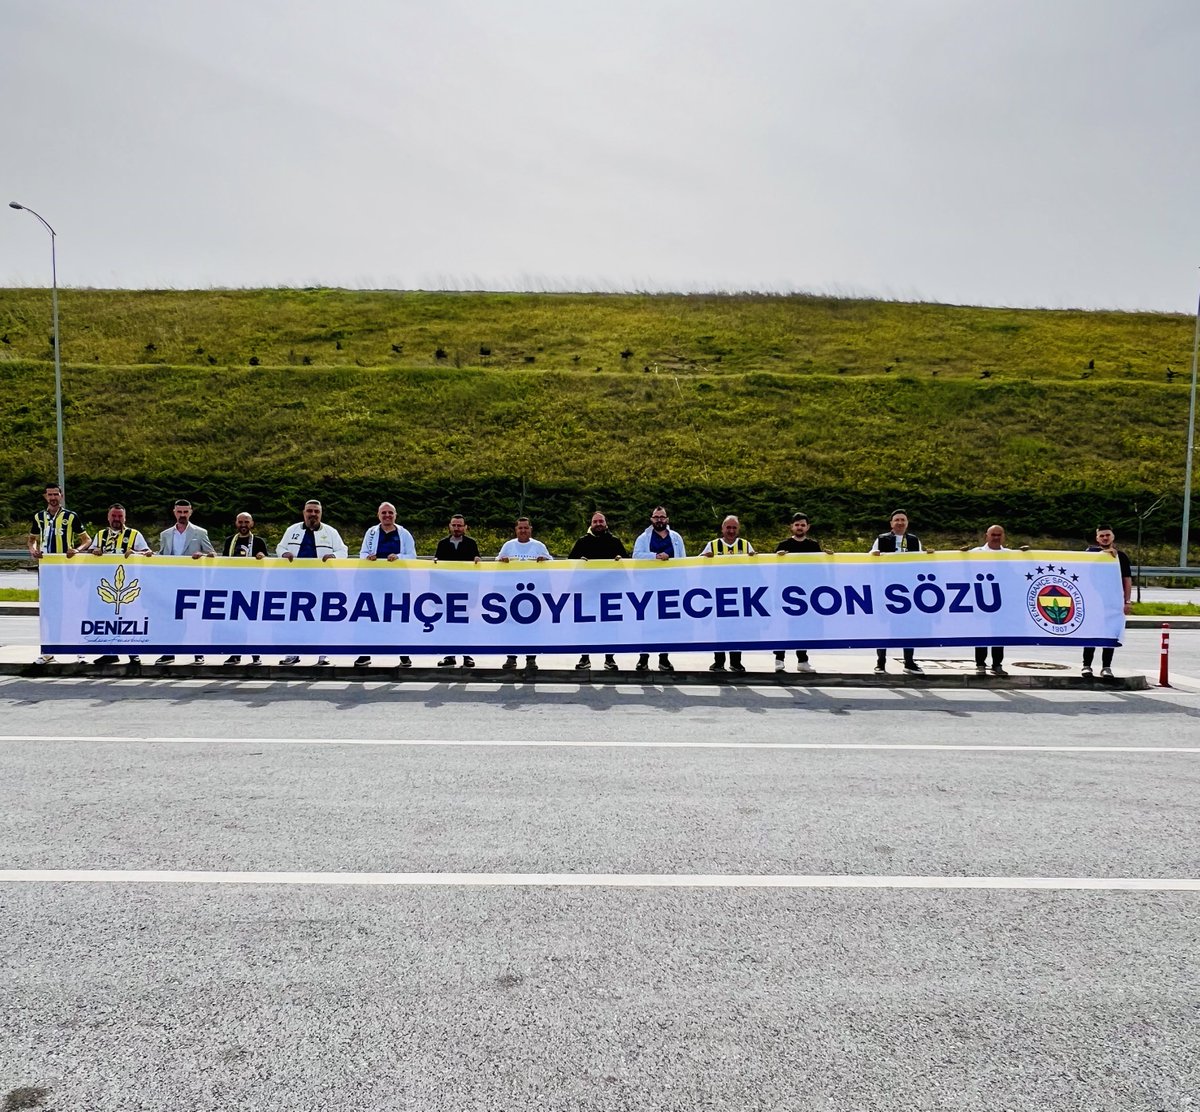 Olağanüstü Genel Kurulumuz için yollardayız. @Fenerbahce 💪

#2nisan #FenerbahçeKongresi #Kongre #Fenerbahçe